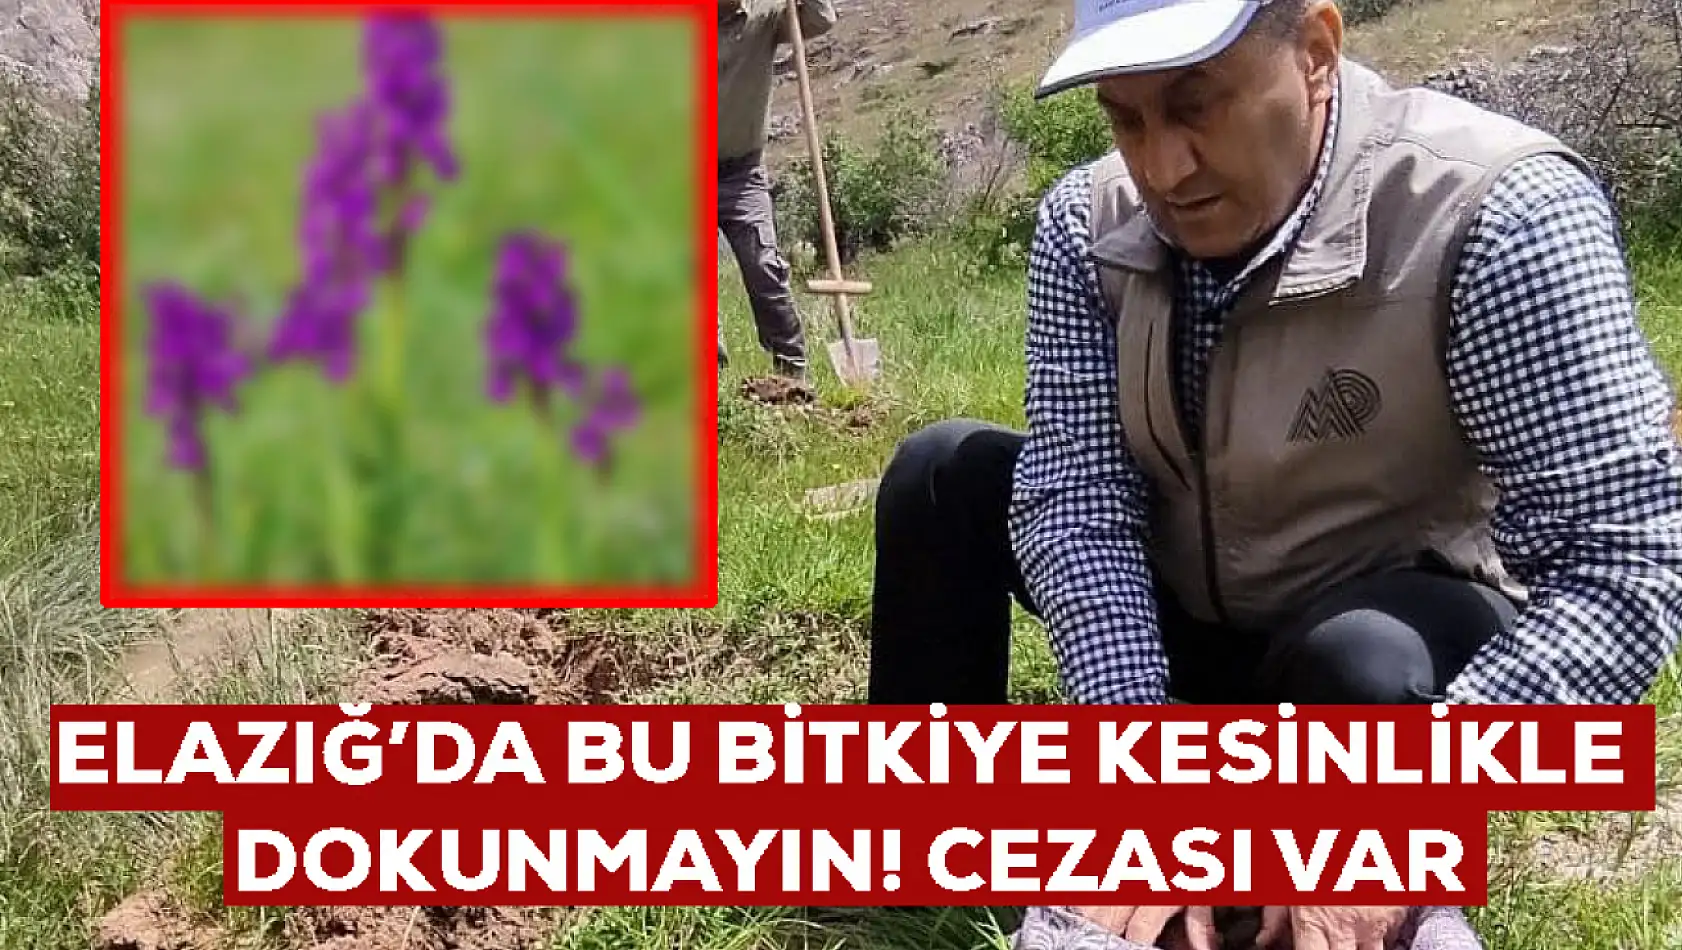 Bu bitki Elazığ'da yetişiyor: Koparılması yasak! 26 kişiye toplamda 2 milyon 964 bin TL ceza kesildi